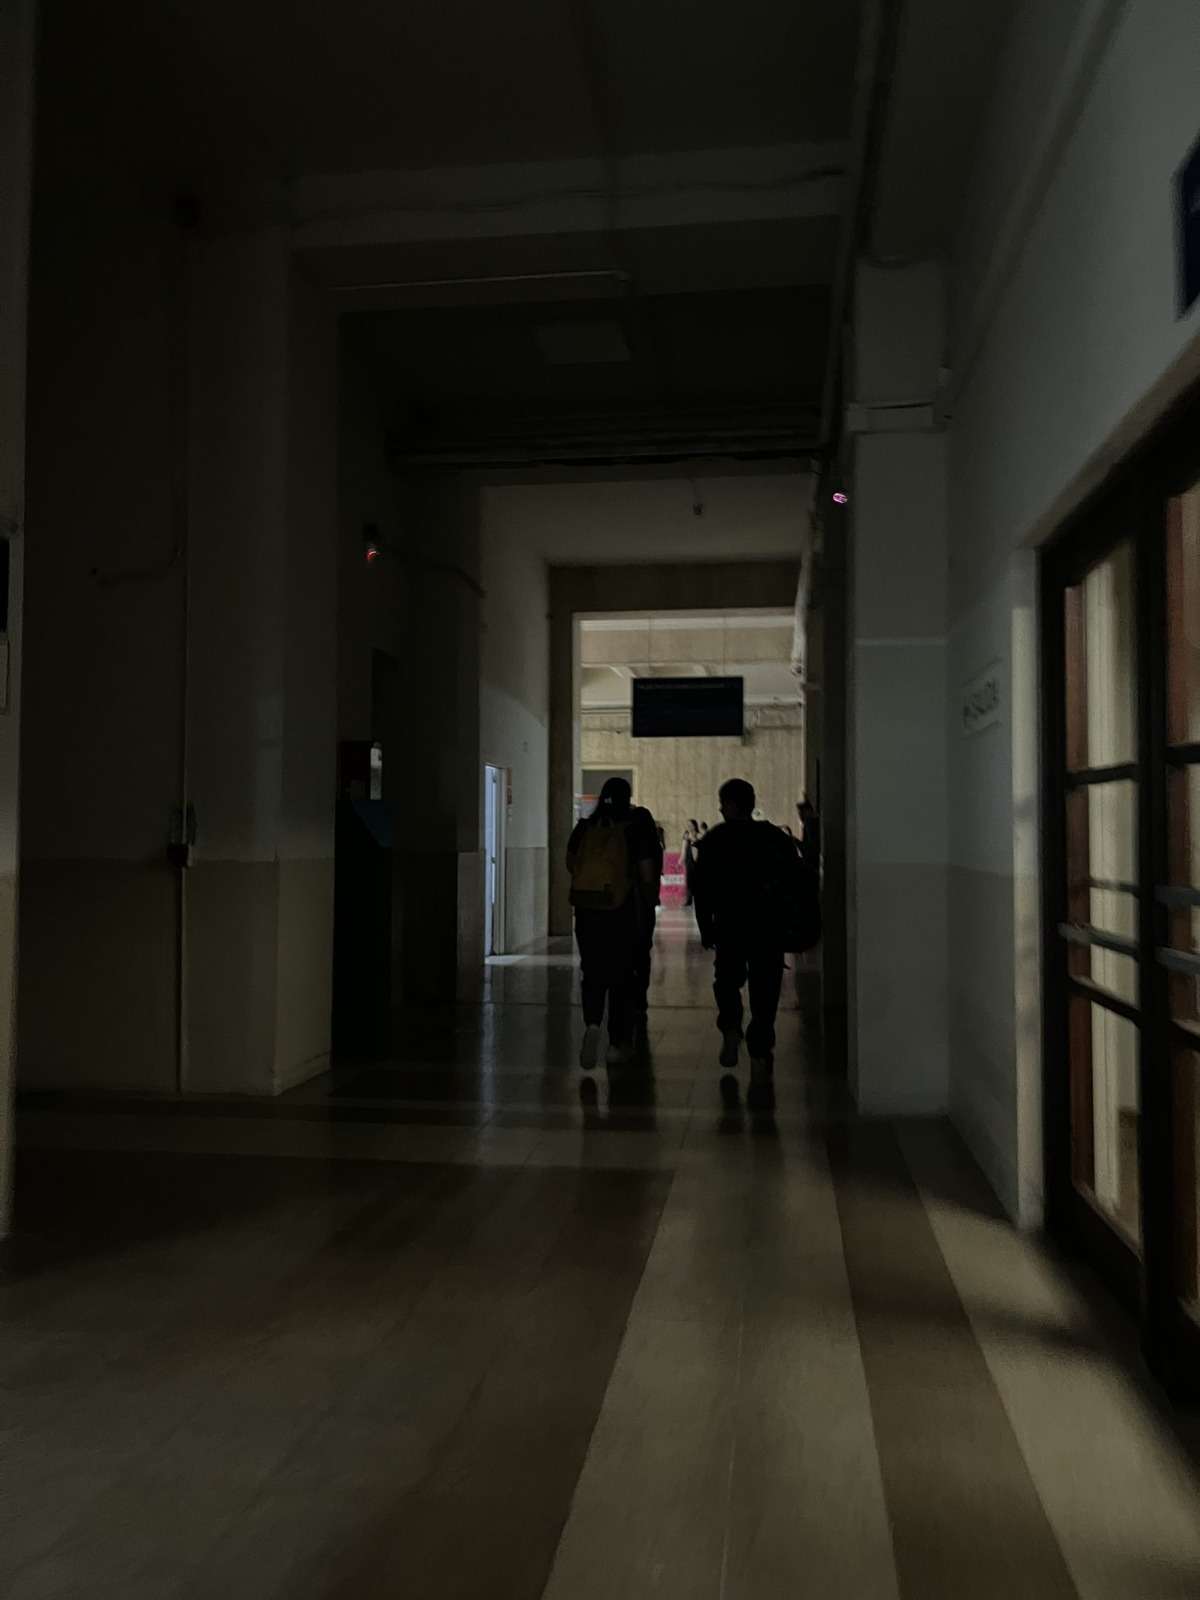 La Educación en penumbras: tras el tarifazo, la facultad de Medicina de la UBA apagó las luces